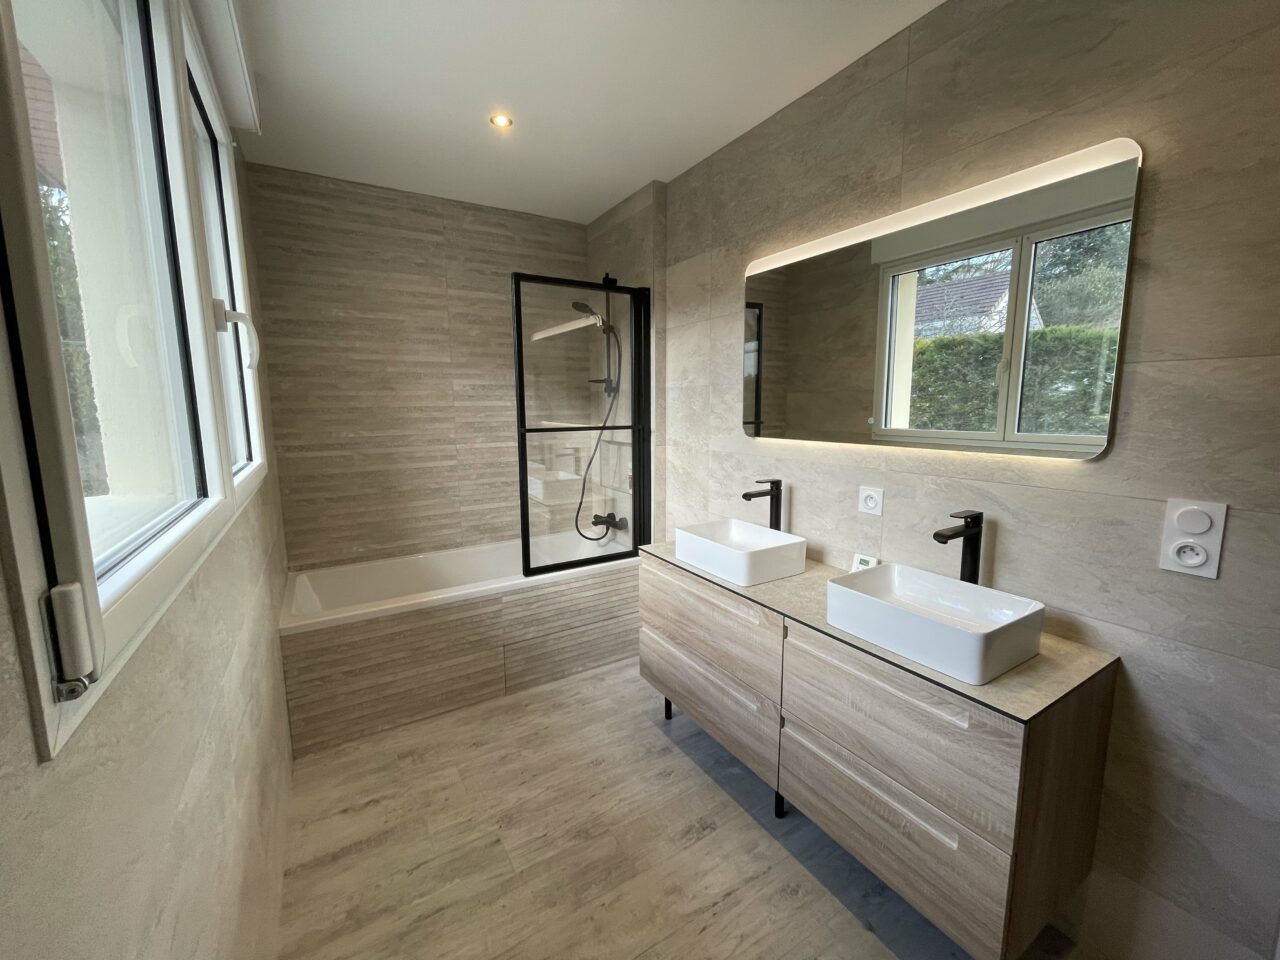 Rénovation salle de bain Dijon - baignoire